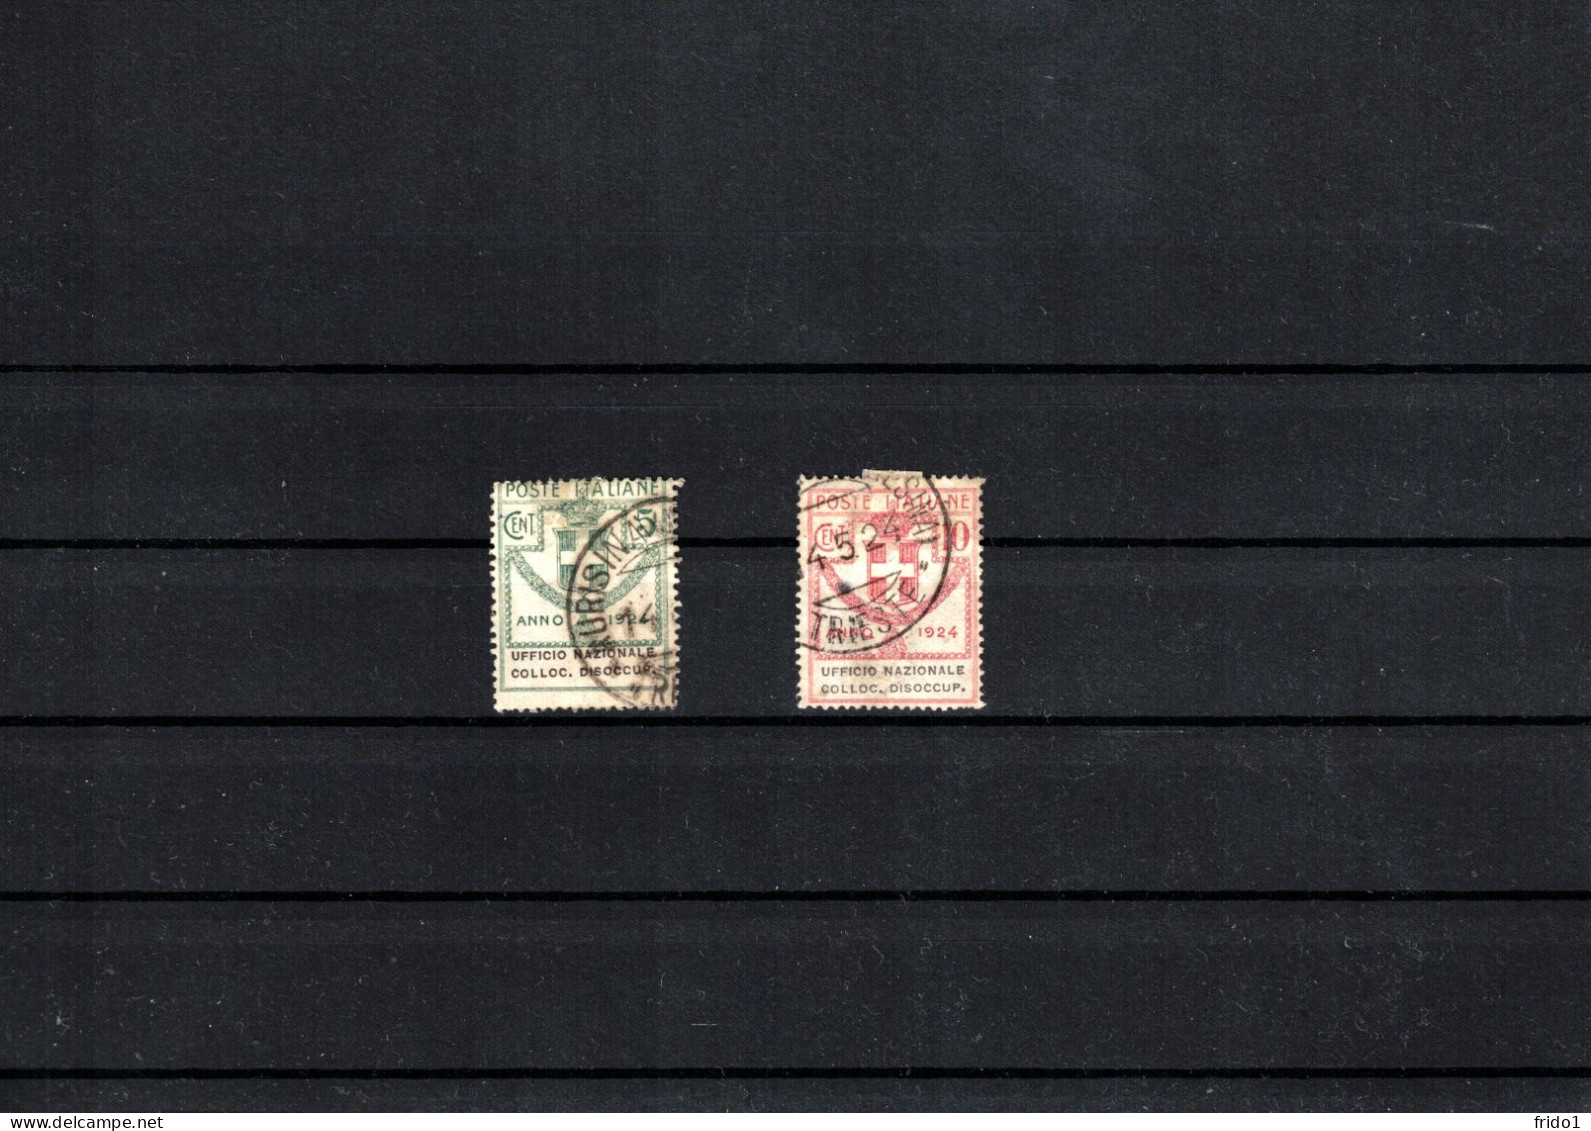 Italy / Italia 1924 Semi-State Stamps - Ufficio Nazionale Colloc. Dissocup. Fine Used - Used